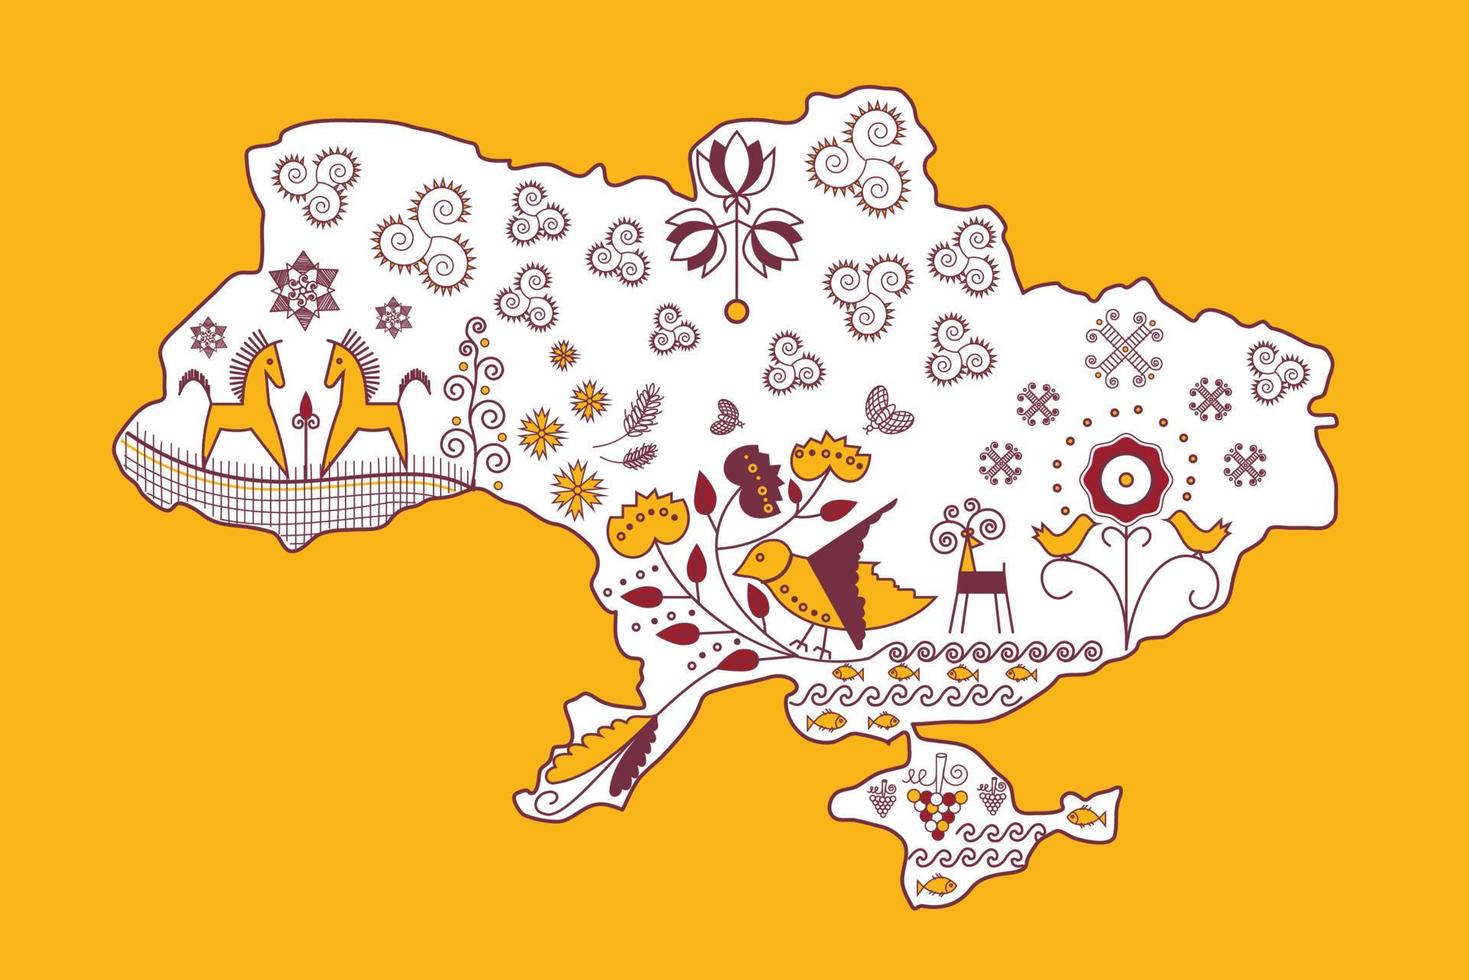 mapa da Ucrânia. símbolos ucranianos tradicionais de felicidade e prosperidade. fundo amarelo. vetor